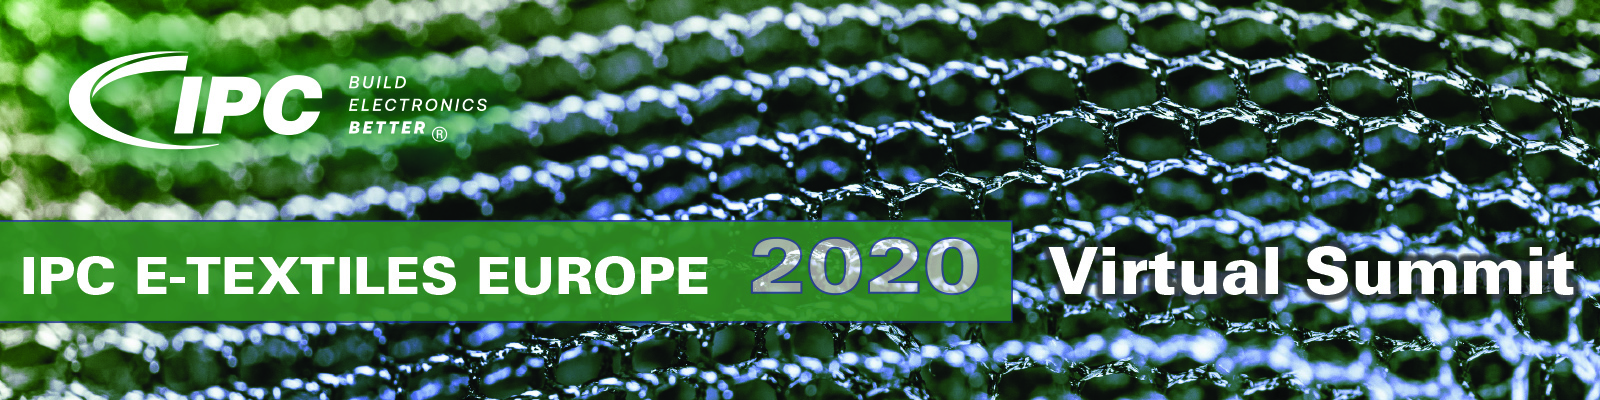 IPC E-Textiles Europe 2020